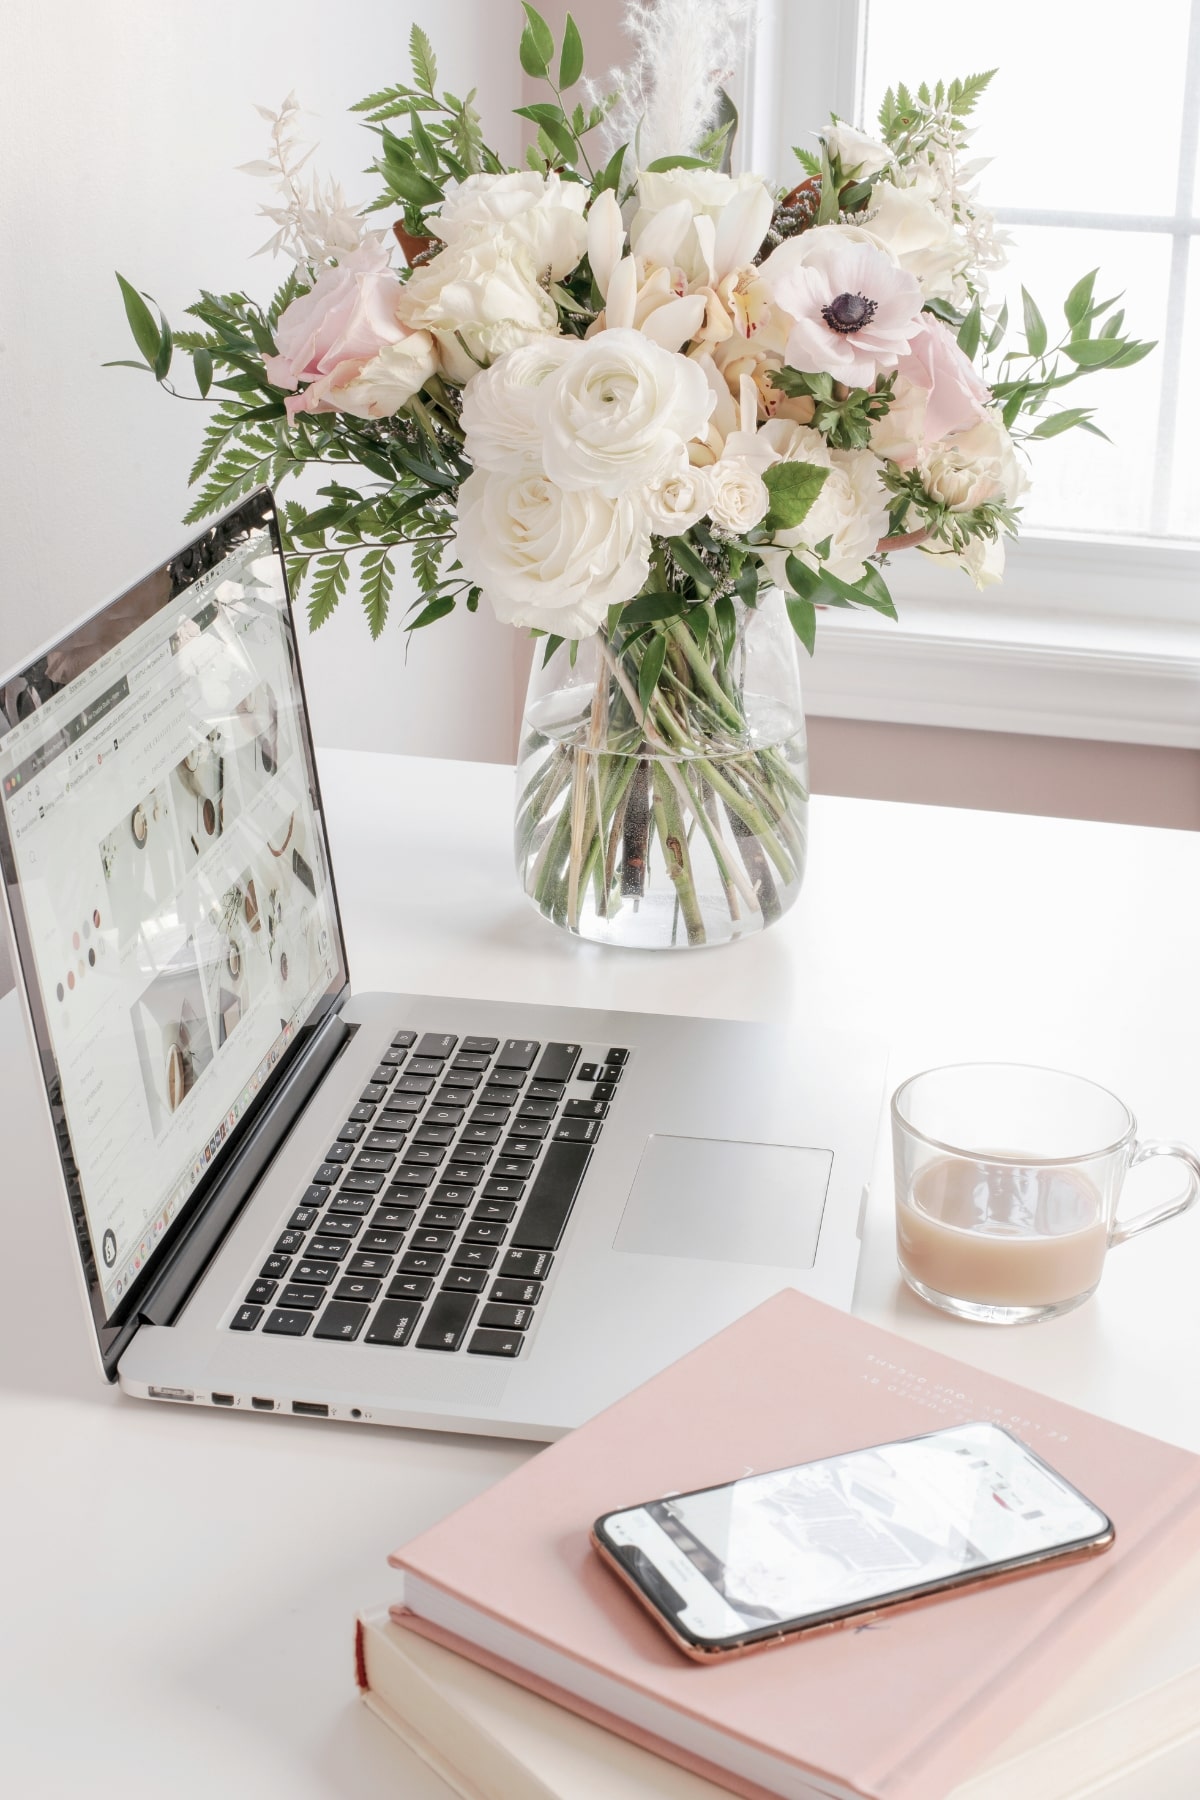 白とピンクを基調としたデスク上に、ノートパソコンとスマートフォン、花瓶に生けられた白い花束が置かれた画像 - ホームページ制作でのお悩み